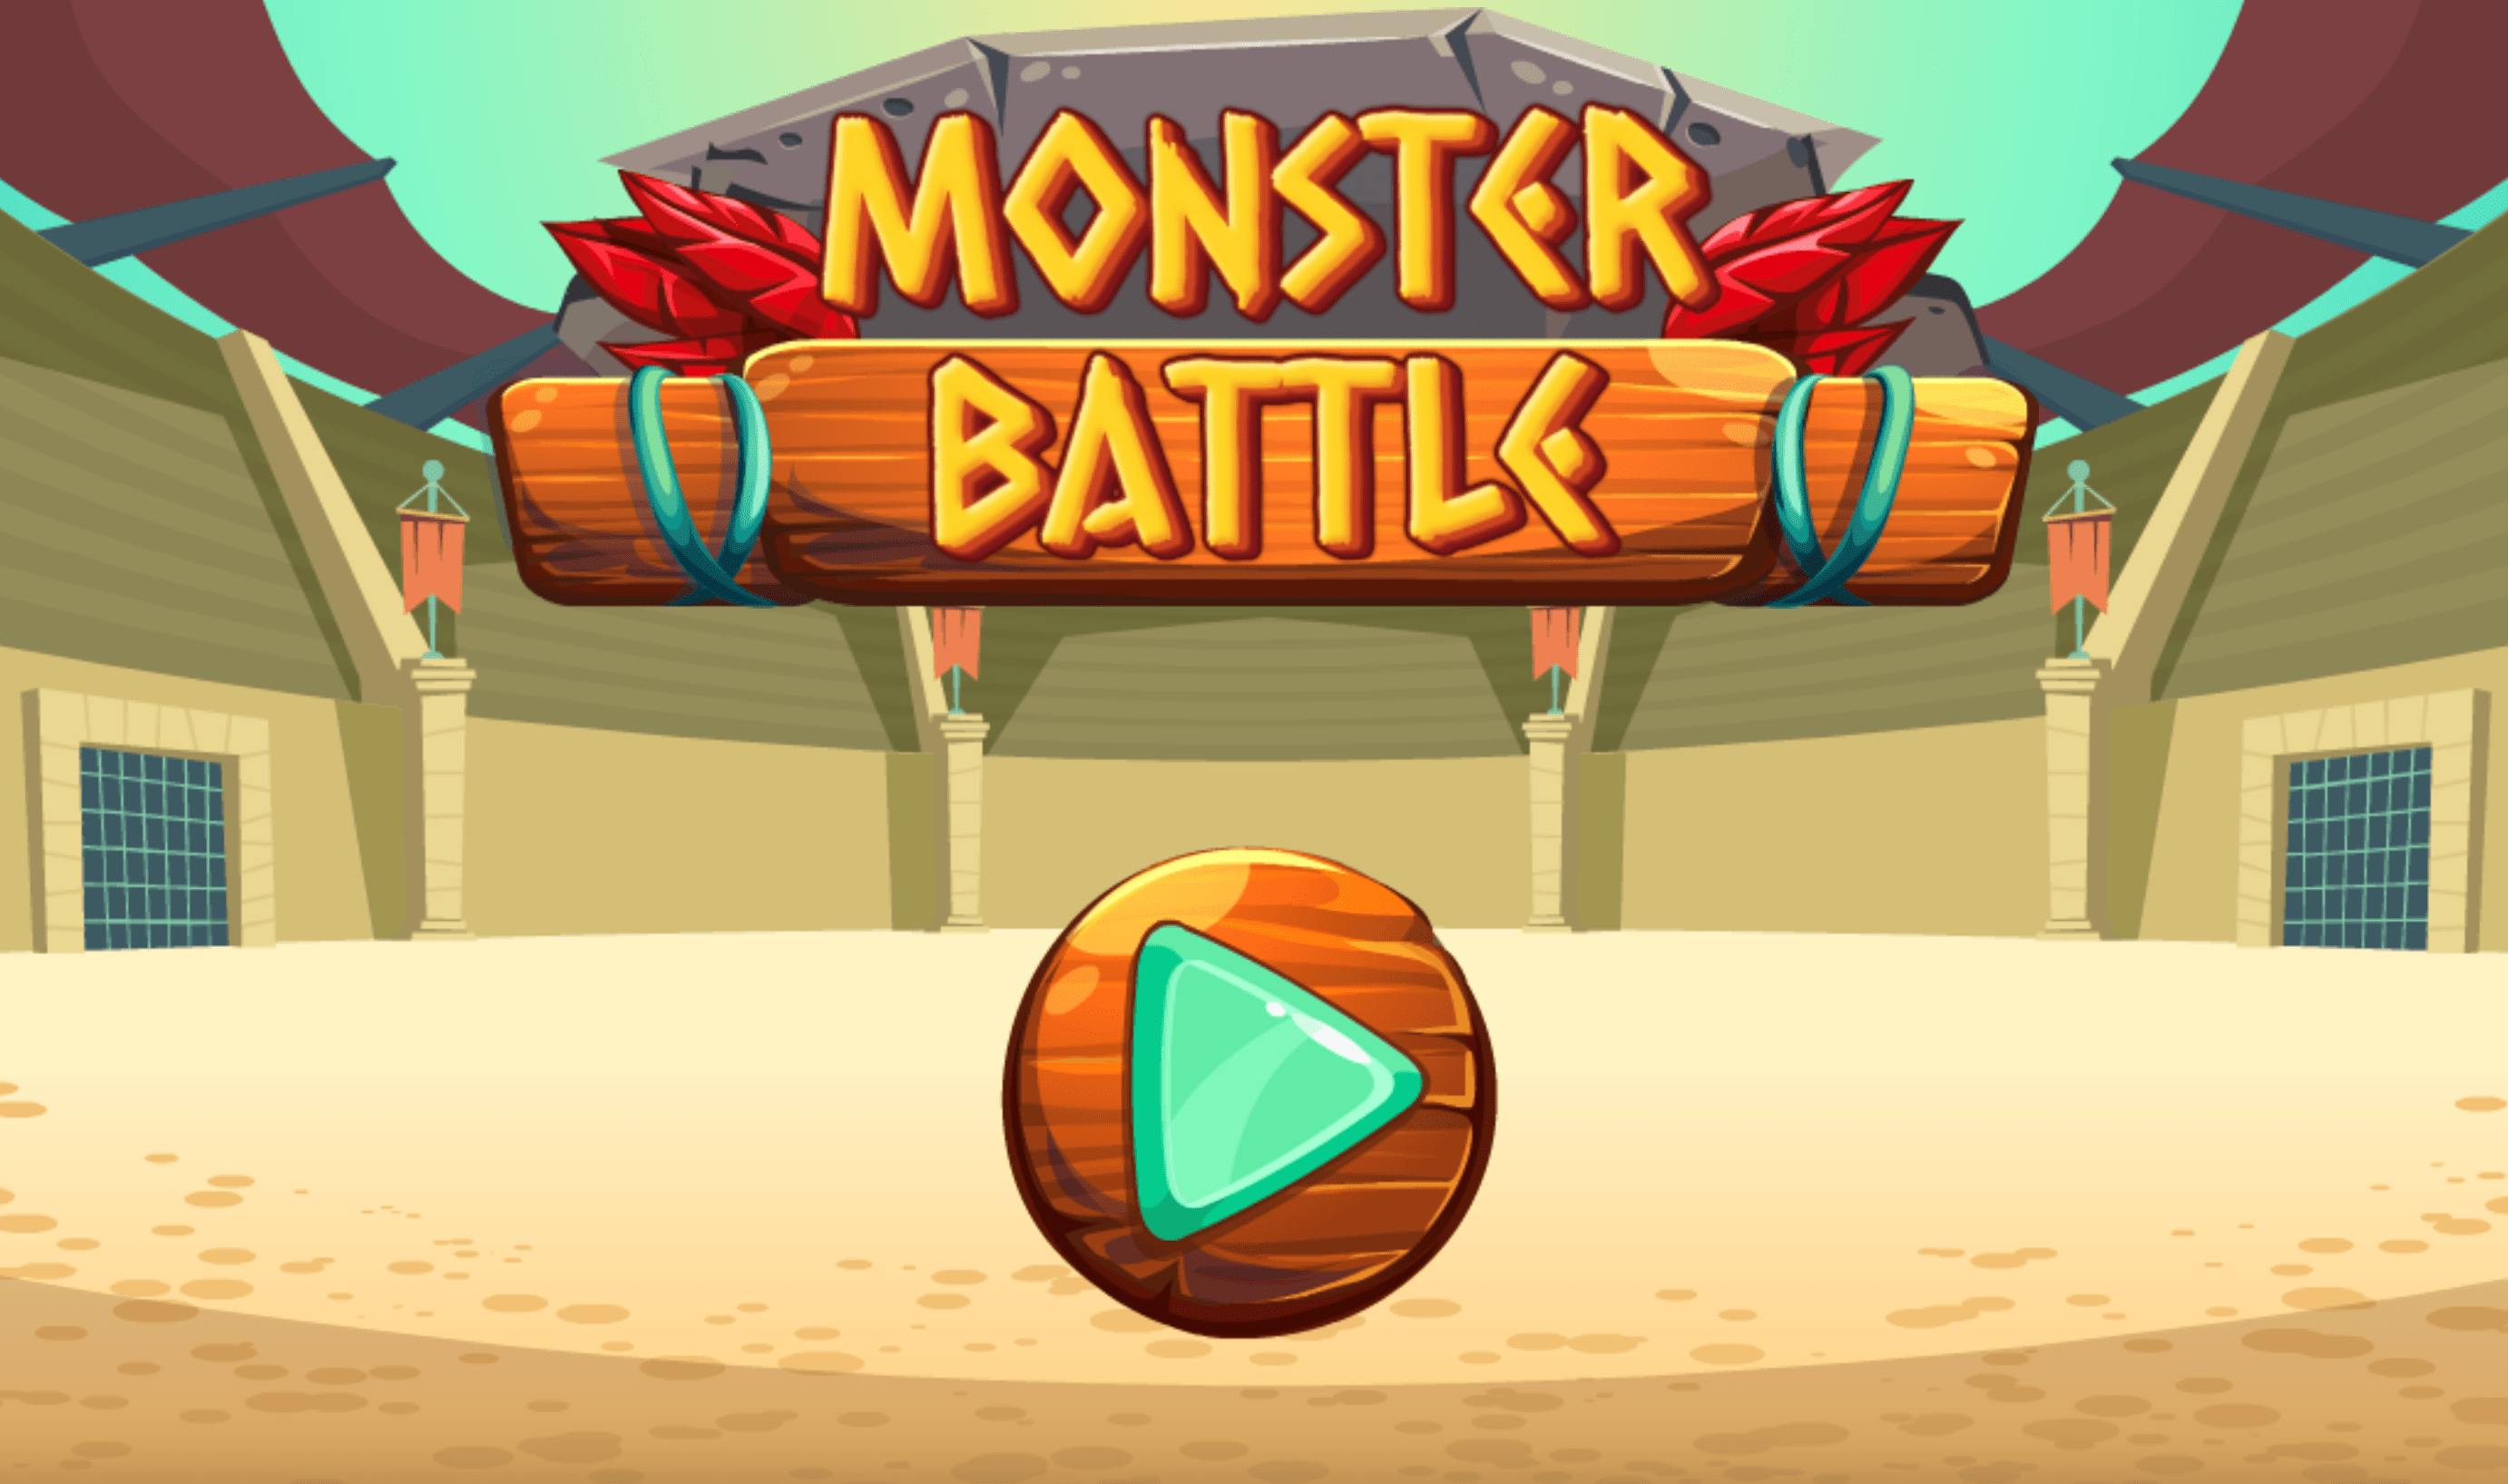 Monster Battle game